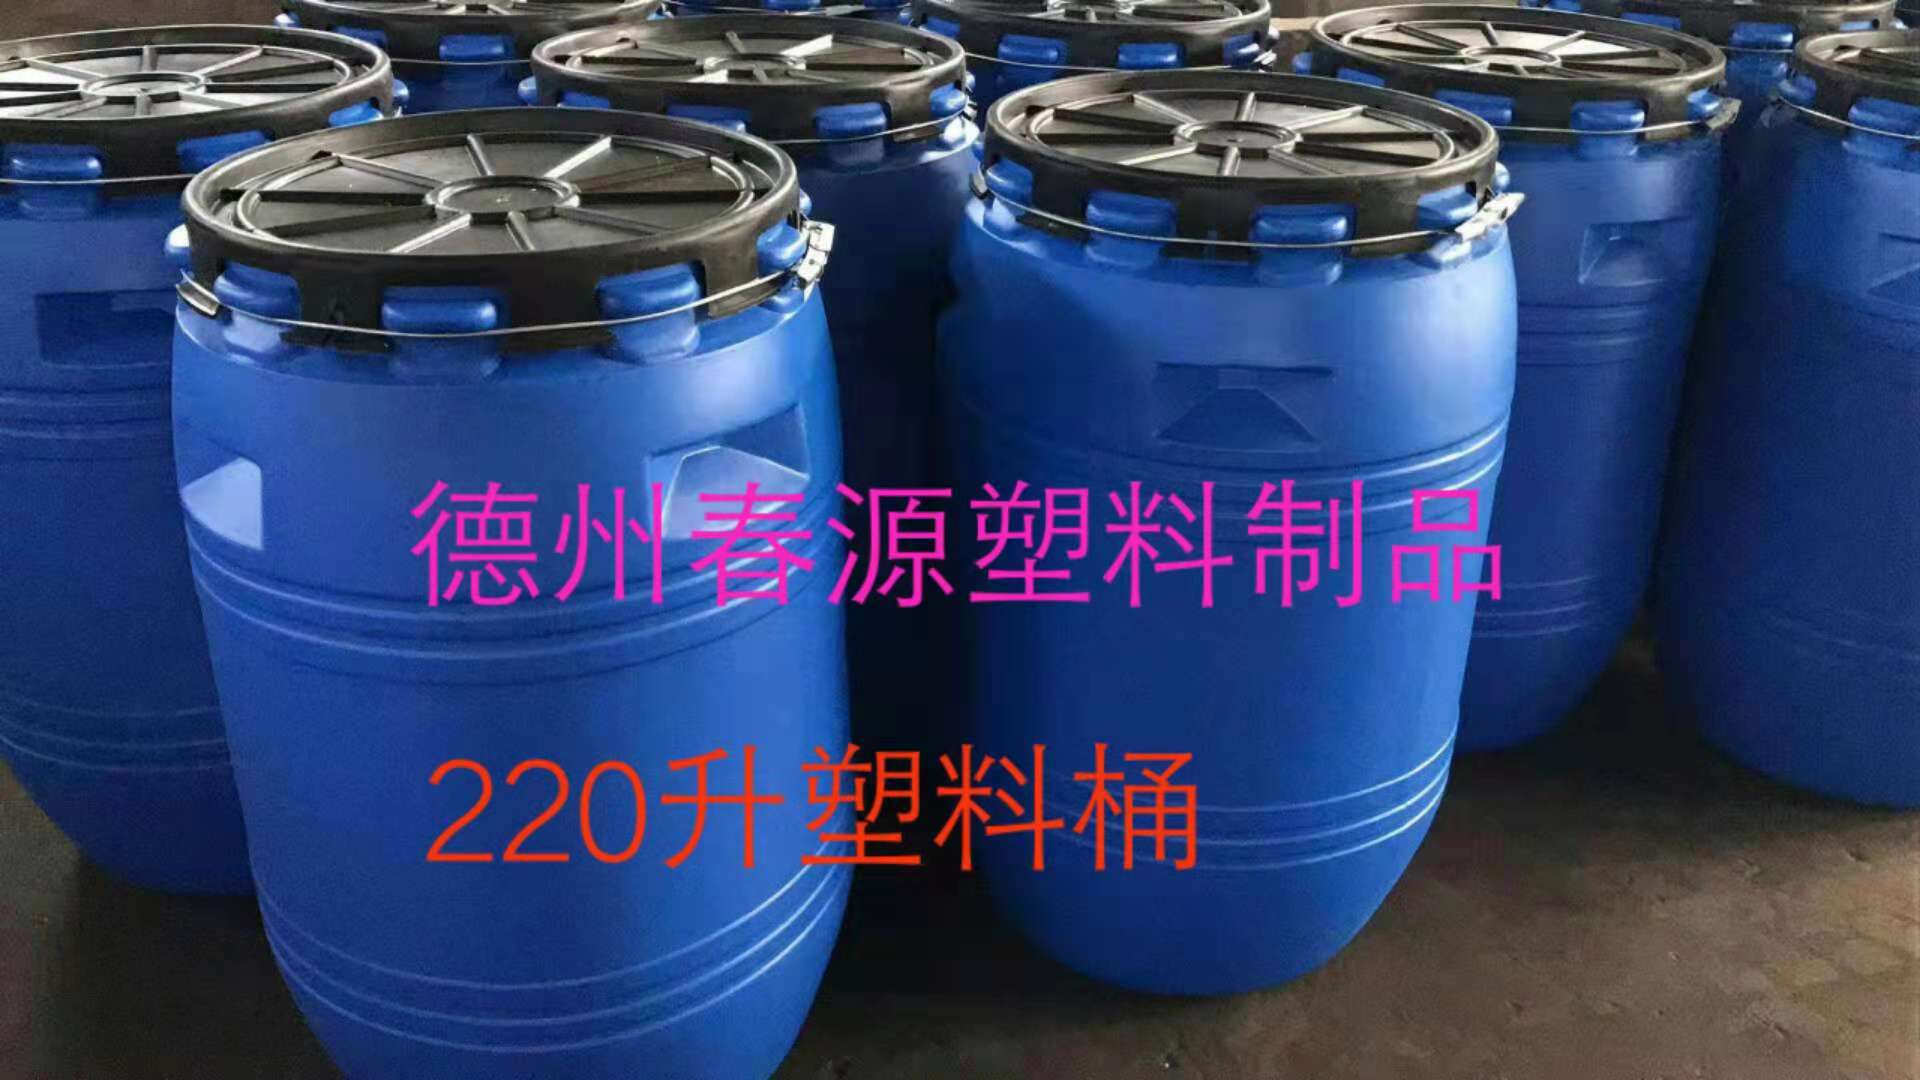 塑料桶厂家推荐新产品220公斤开口黑盖塑料桶